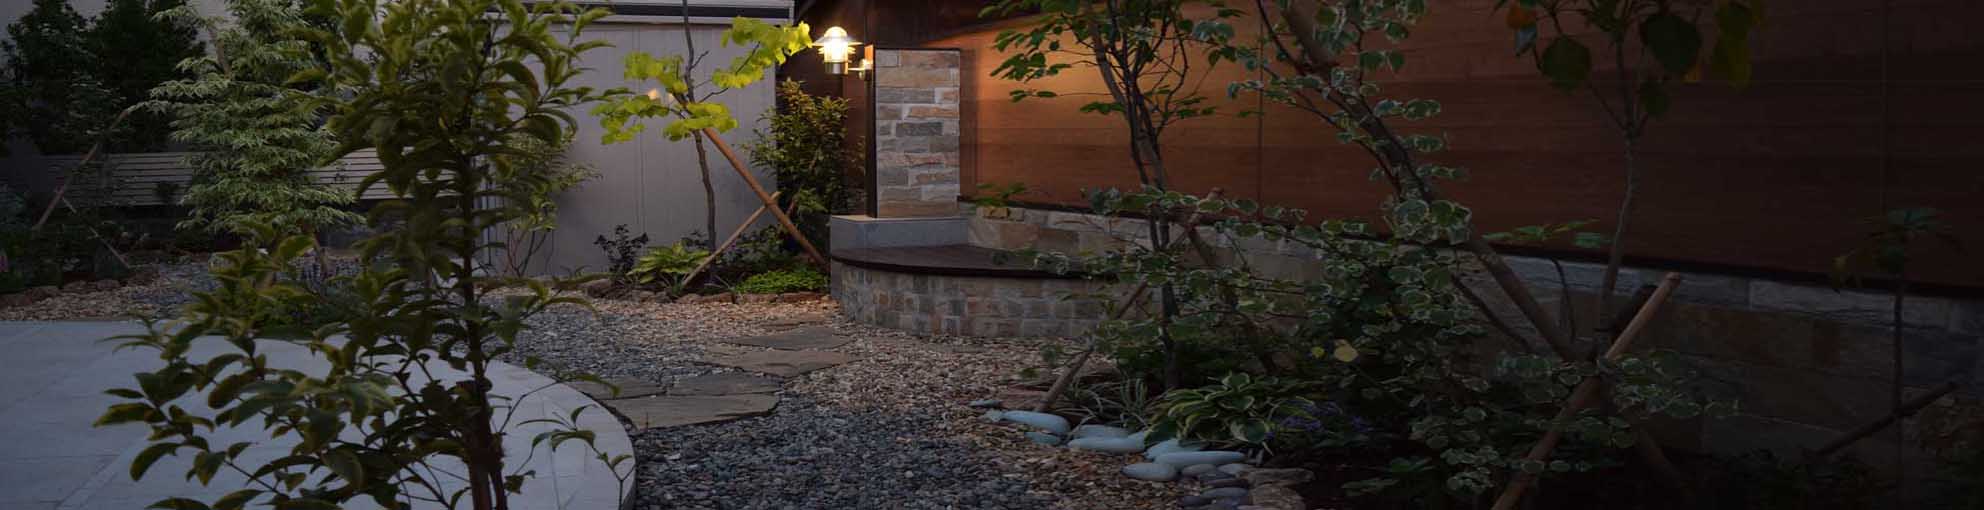 アトリエアムニー はおしゃれなエクステリア 外構と庭デザインの工房 仙台市 宮城県 飯能の工事 ガーデンリフォーム業者です